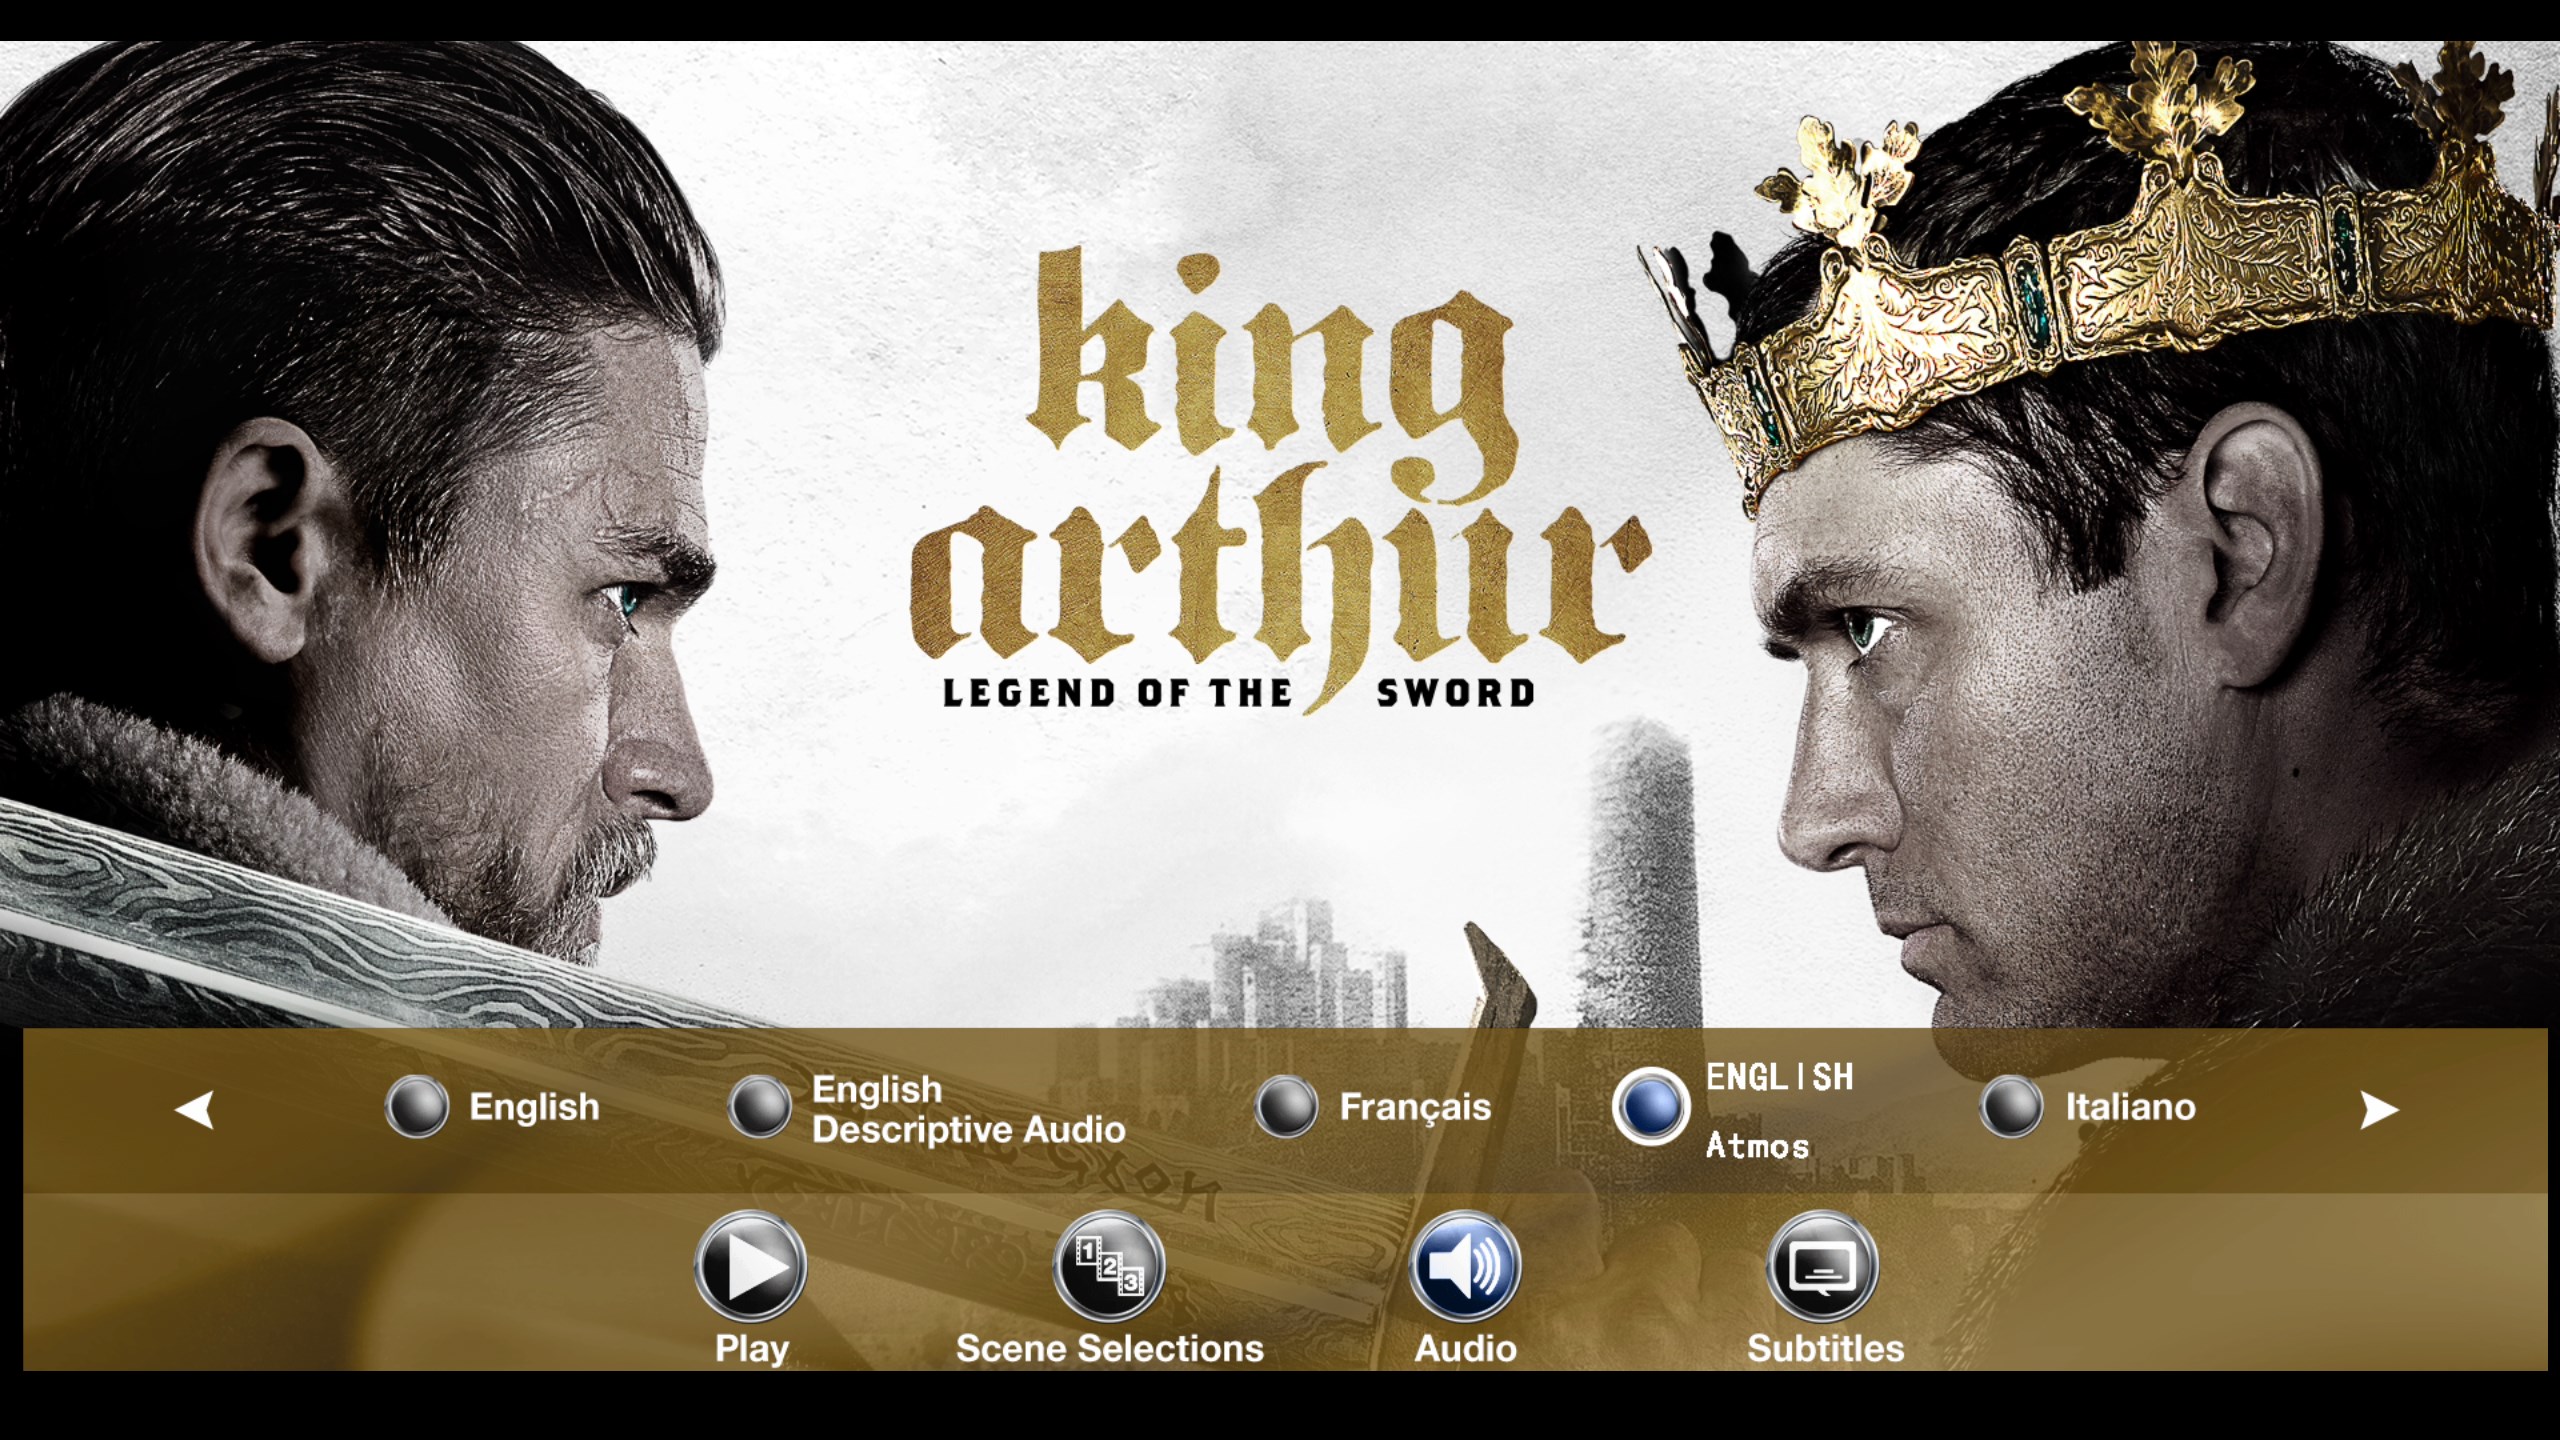 亚瑟王：斗兽争霸/亚瑟王：圣剑传奇【3D原盘DIY简繁/双语字幕】 King Arthur Legend of the Sword 2017 3D 1080p Blu-ray AVC TrueHD7.1 Atmos-Thor@HDSky    [40.86 GB ]-3.jpg